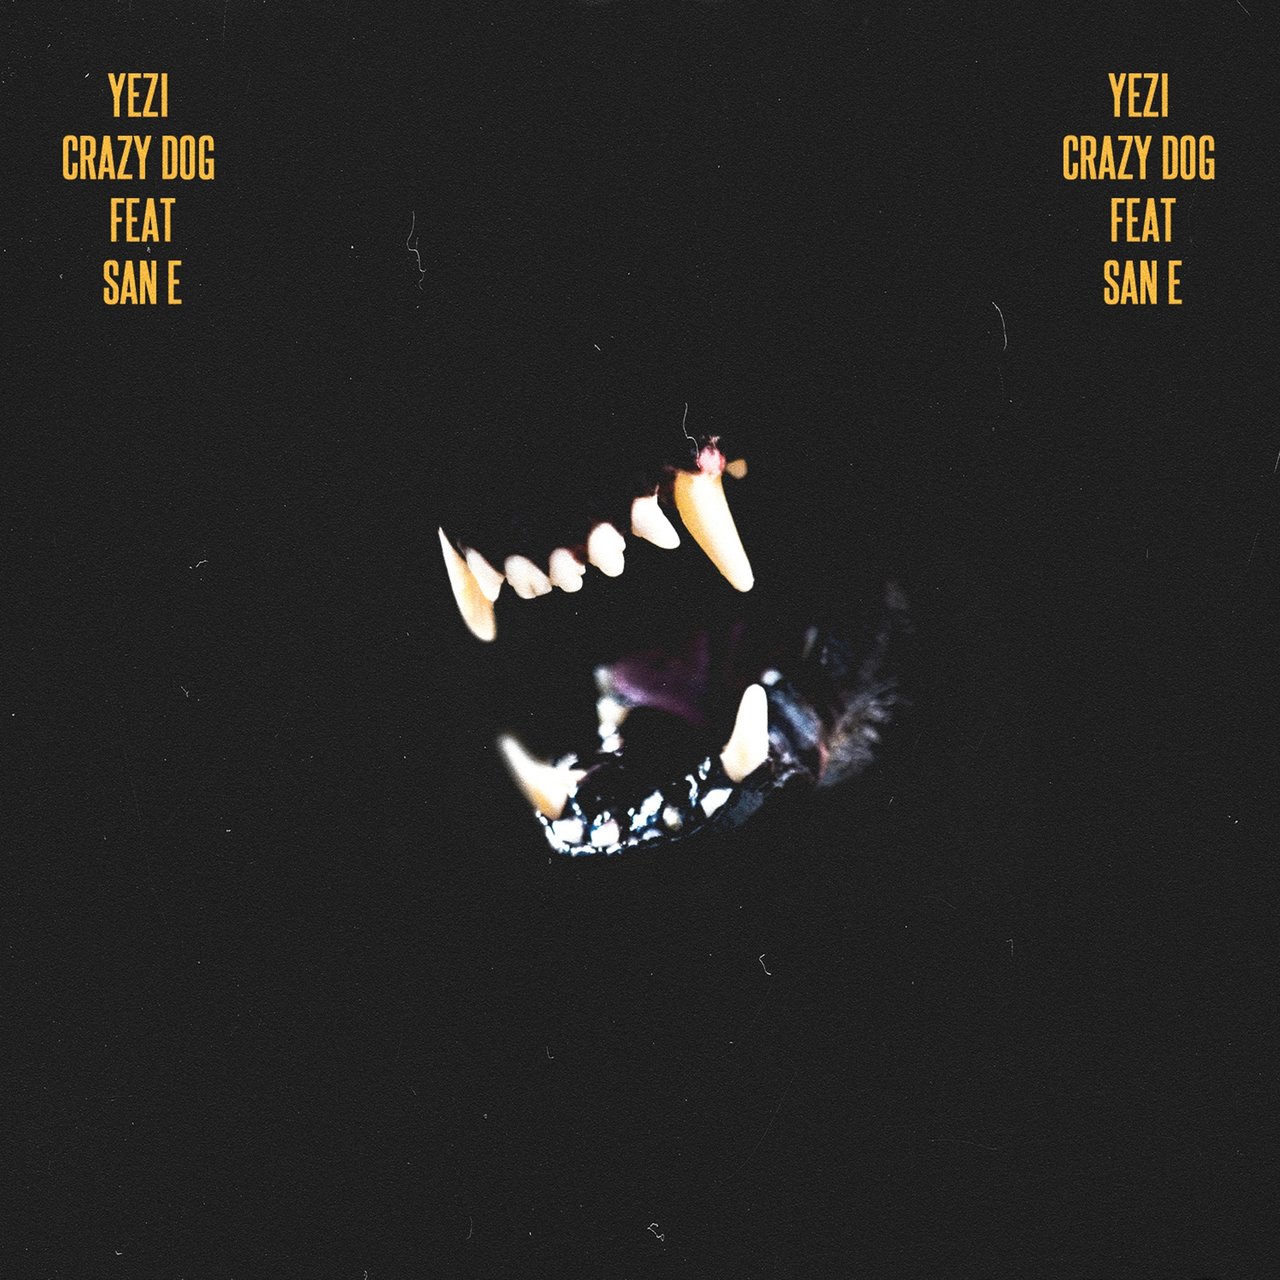 Yezi featuring San E — CRAZY DOG cover artwork